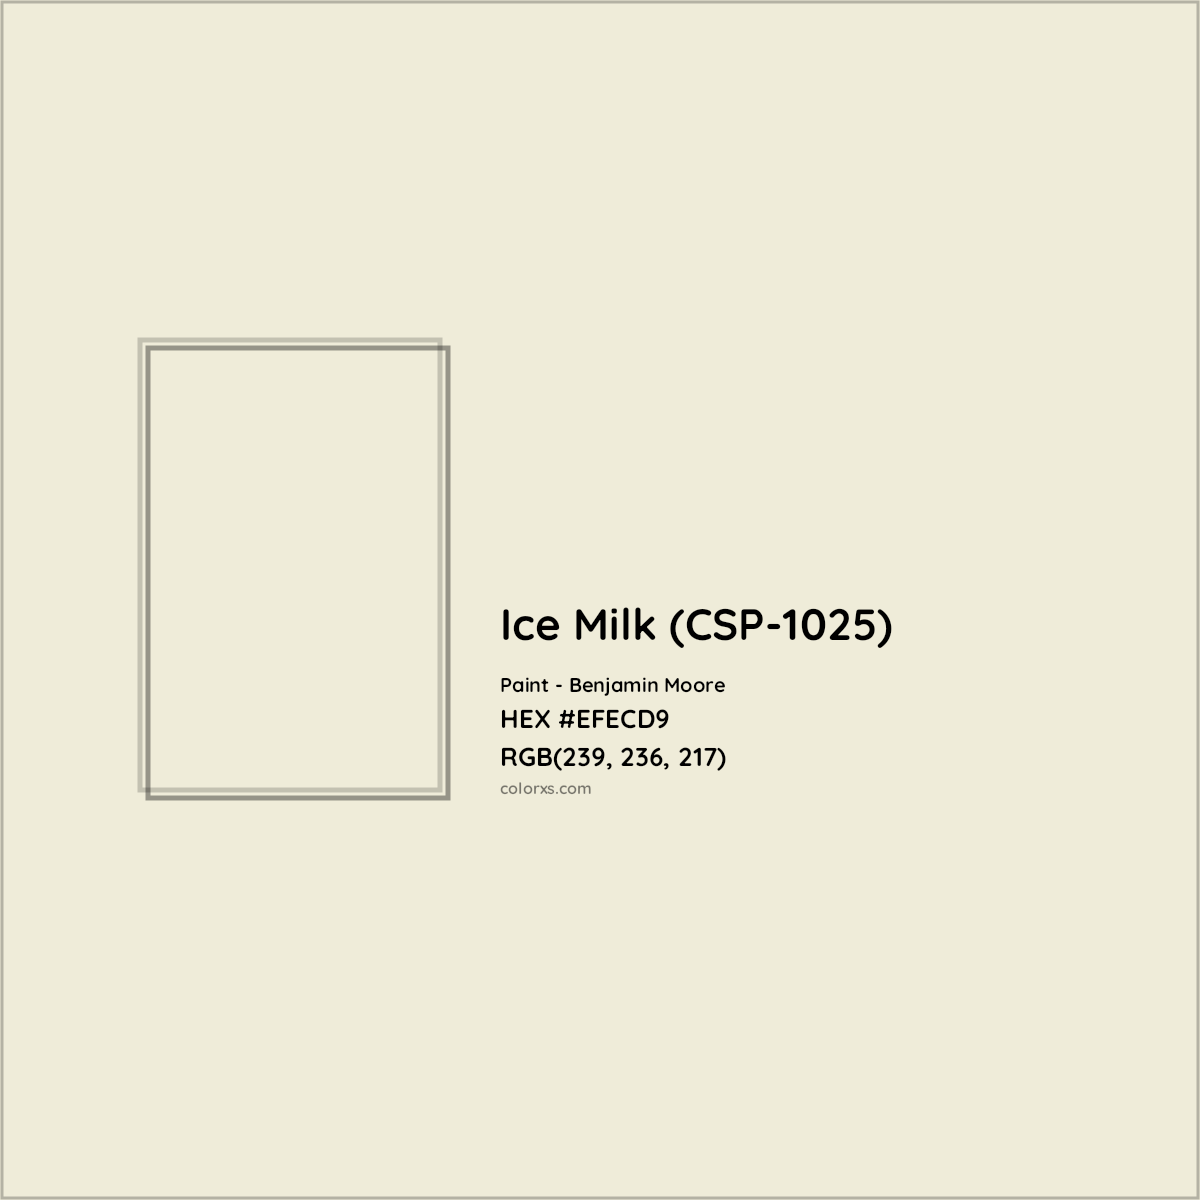 HEX #EFECD9 Ice Milk (CSP-1025) Paint Benjamin Moore - Color Code